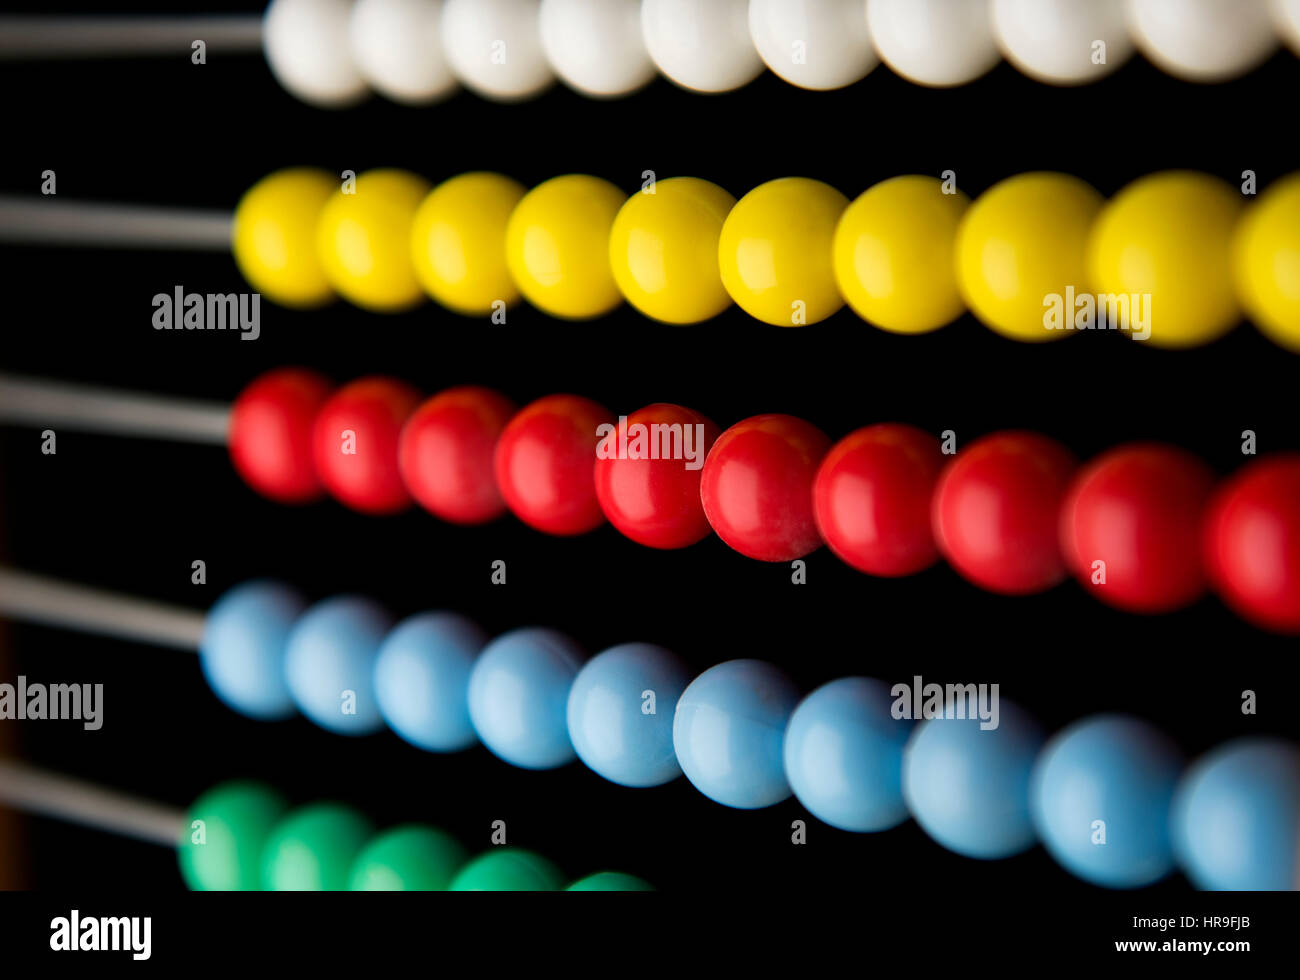 Abacus-Perlen in einem Frame. Februar 2017 farbige Abacus Perlen für die Berechnung besonders in Nahost Trhe verwendet. Stockfoto